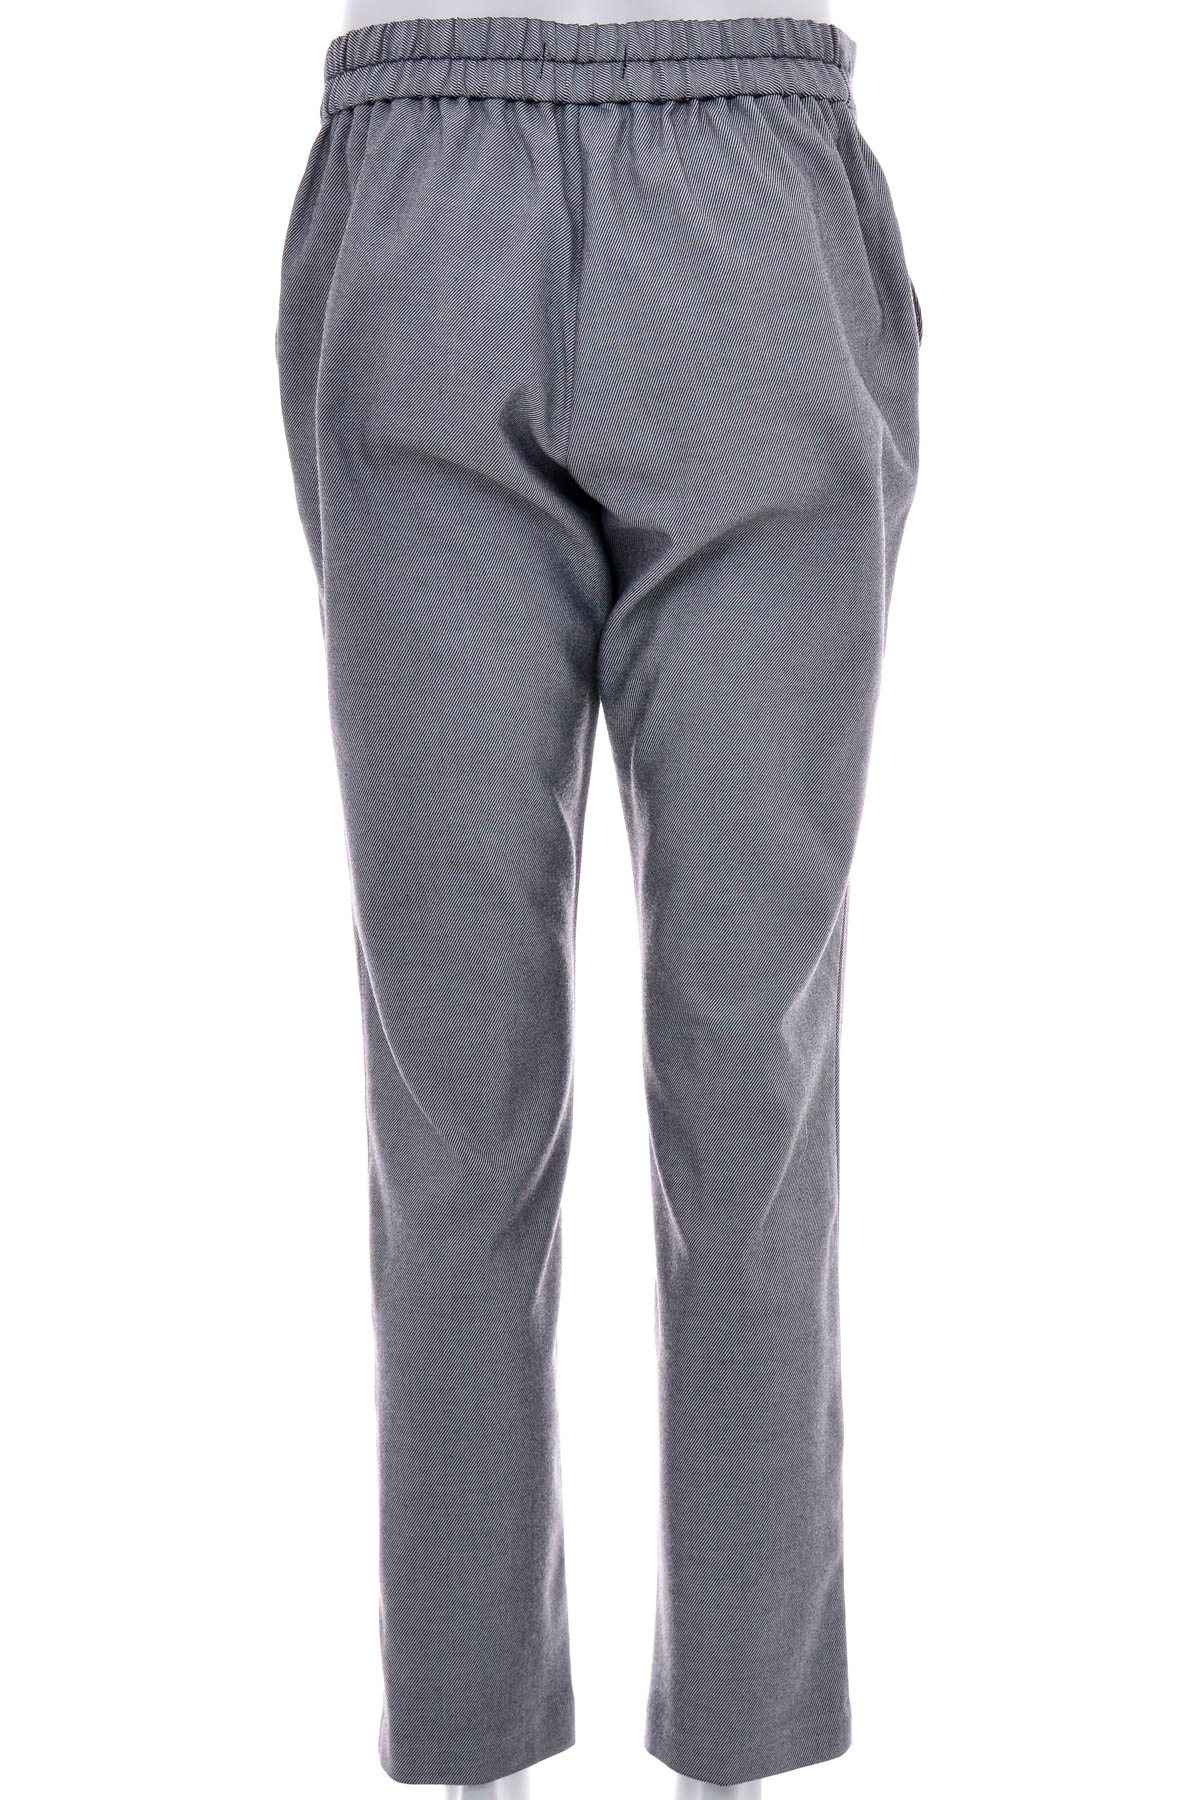 Men's trousers - Bpc selection bonprix collection - 1